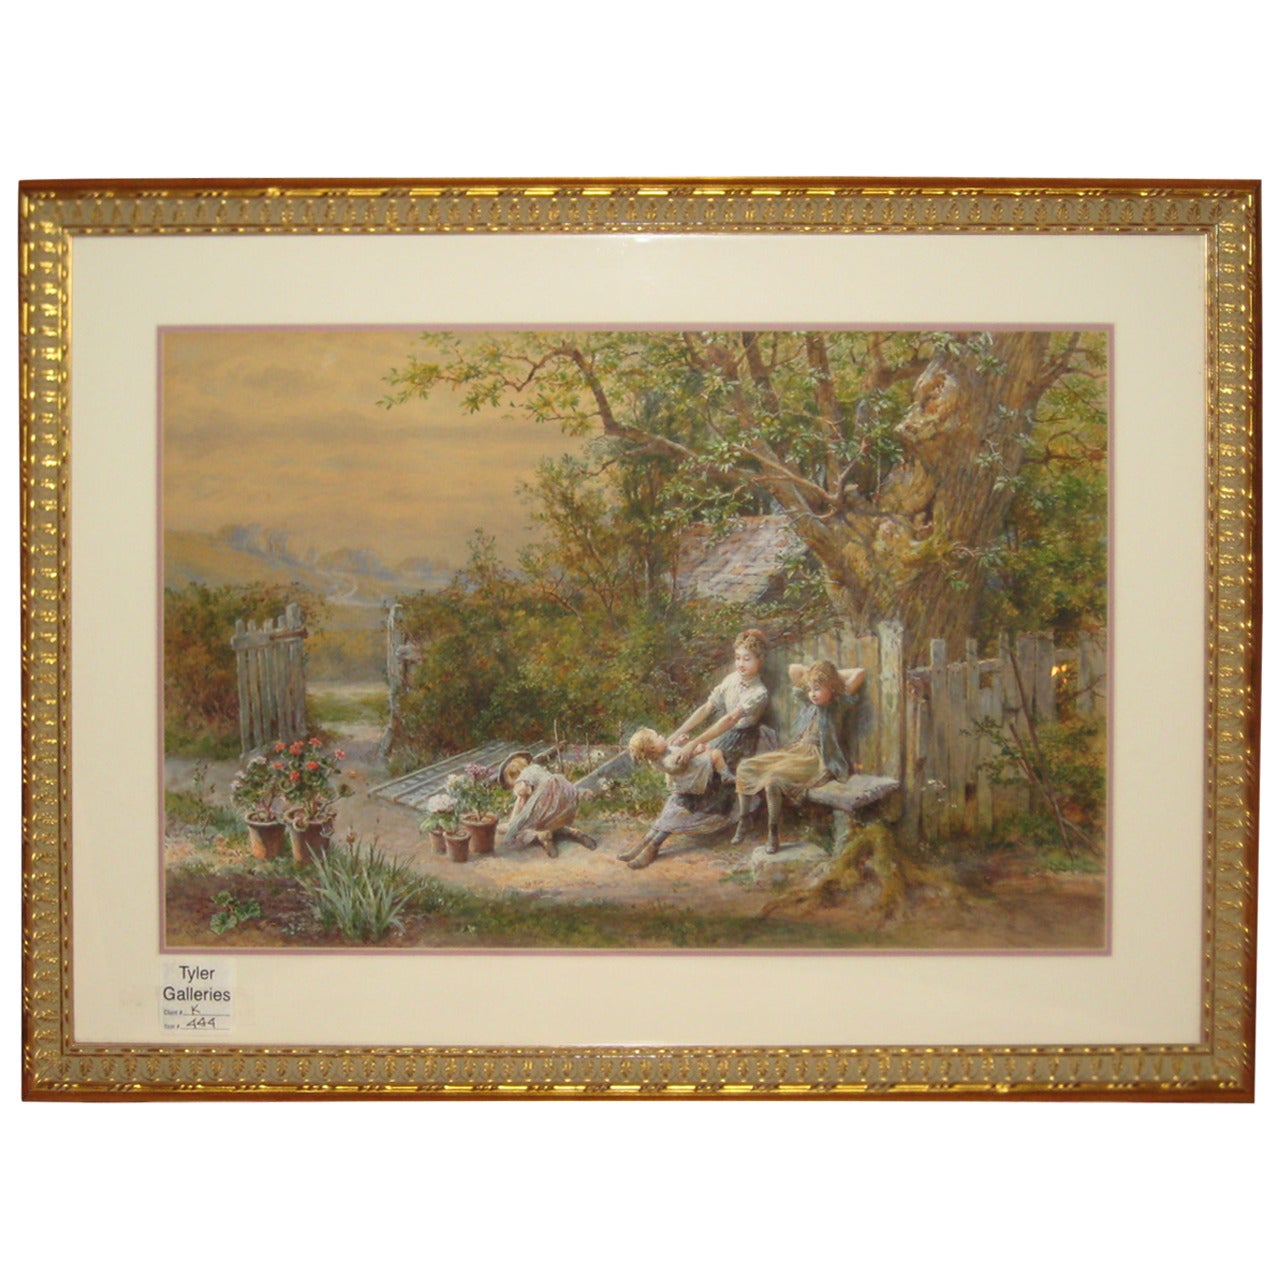 William Stephen Coleman, "Children in the Garden" Watercolor, 1889